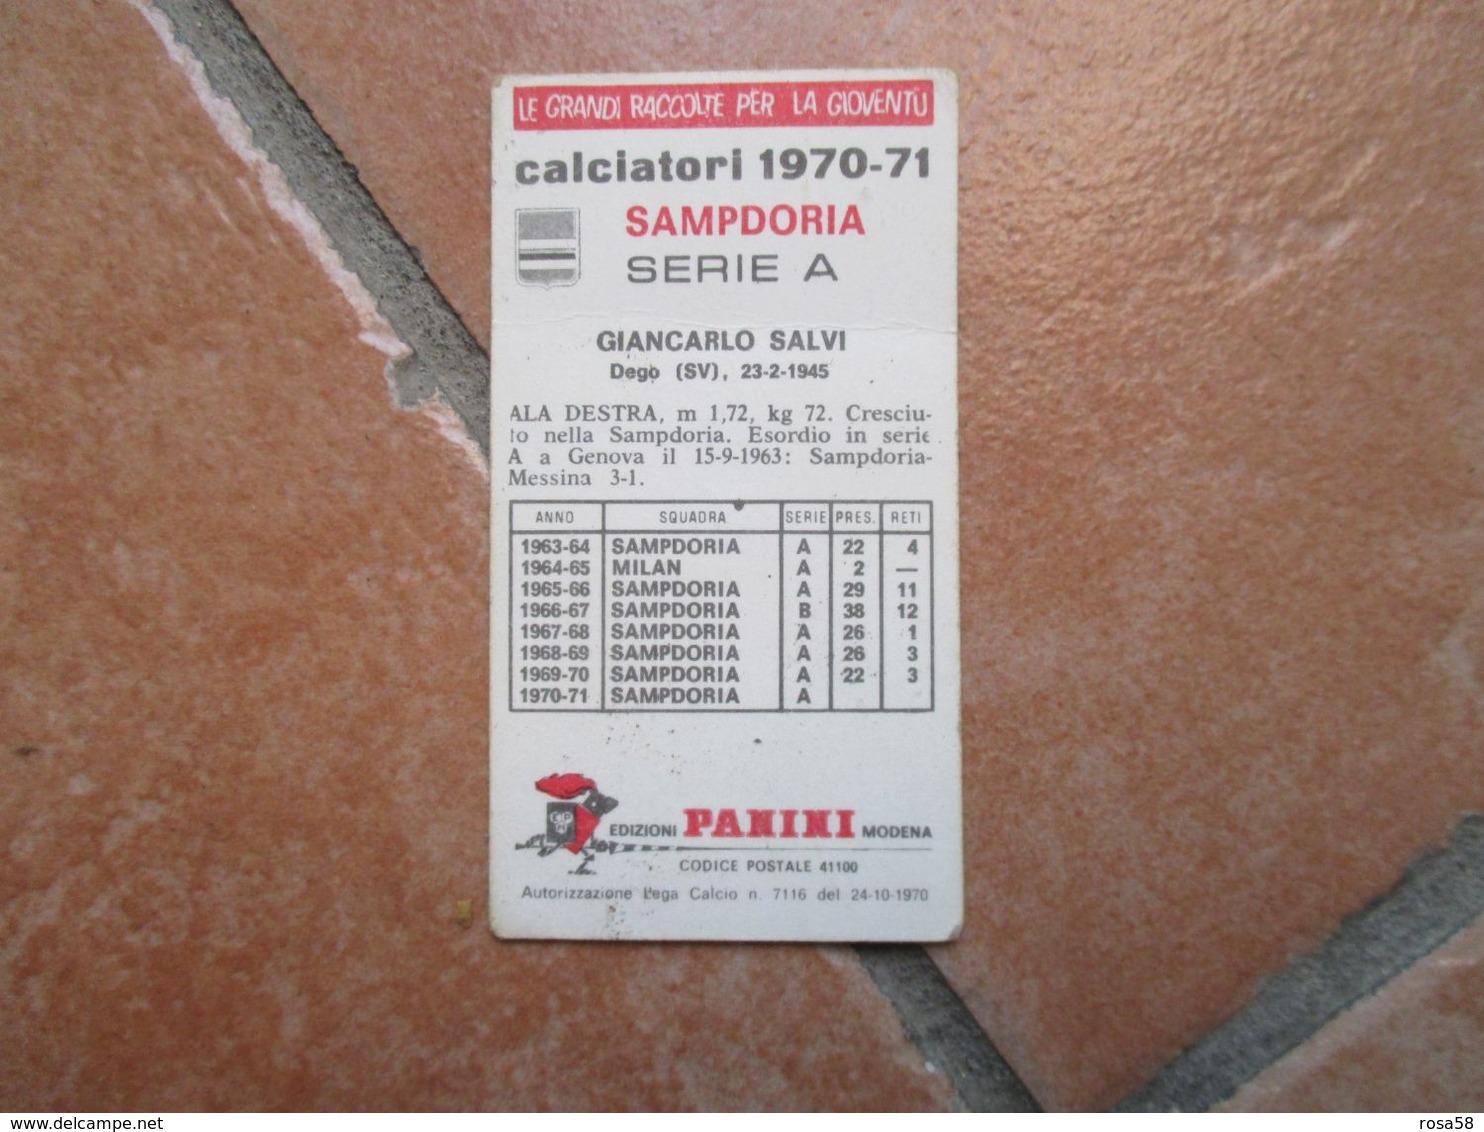 Figurine PANINI Modena Calciatori n.6 differenti SAMPDORIA con Squadra1970 1971